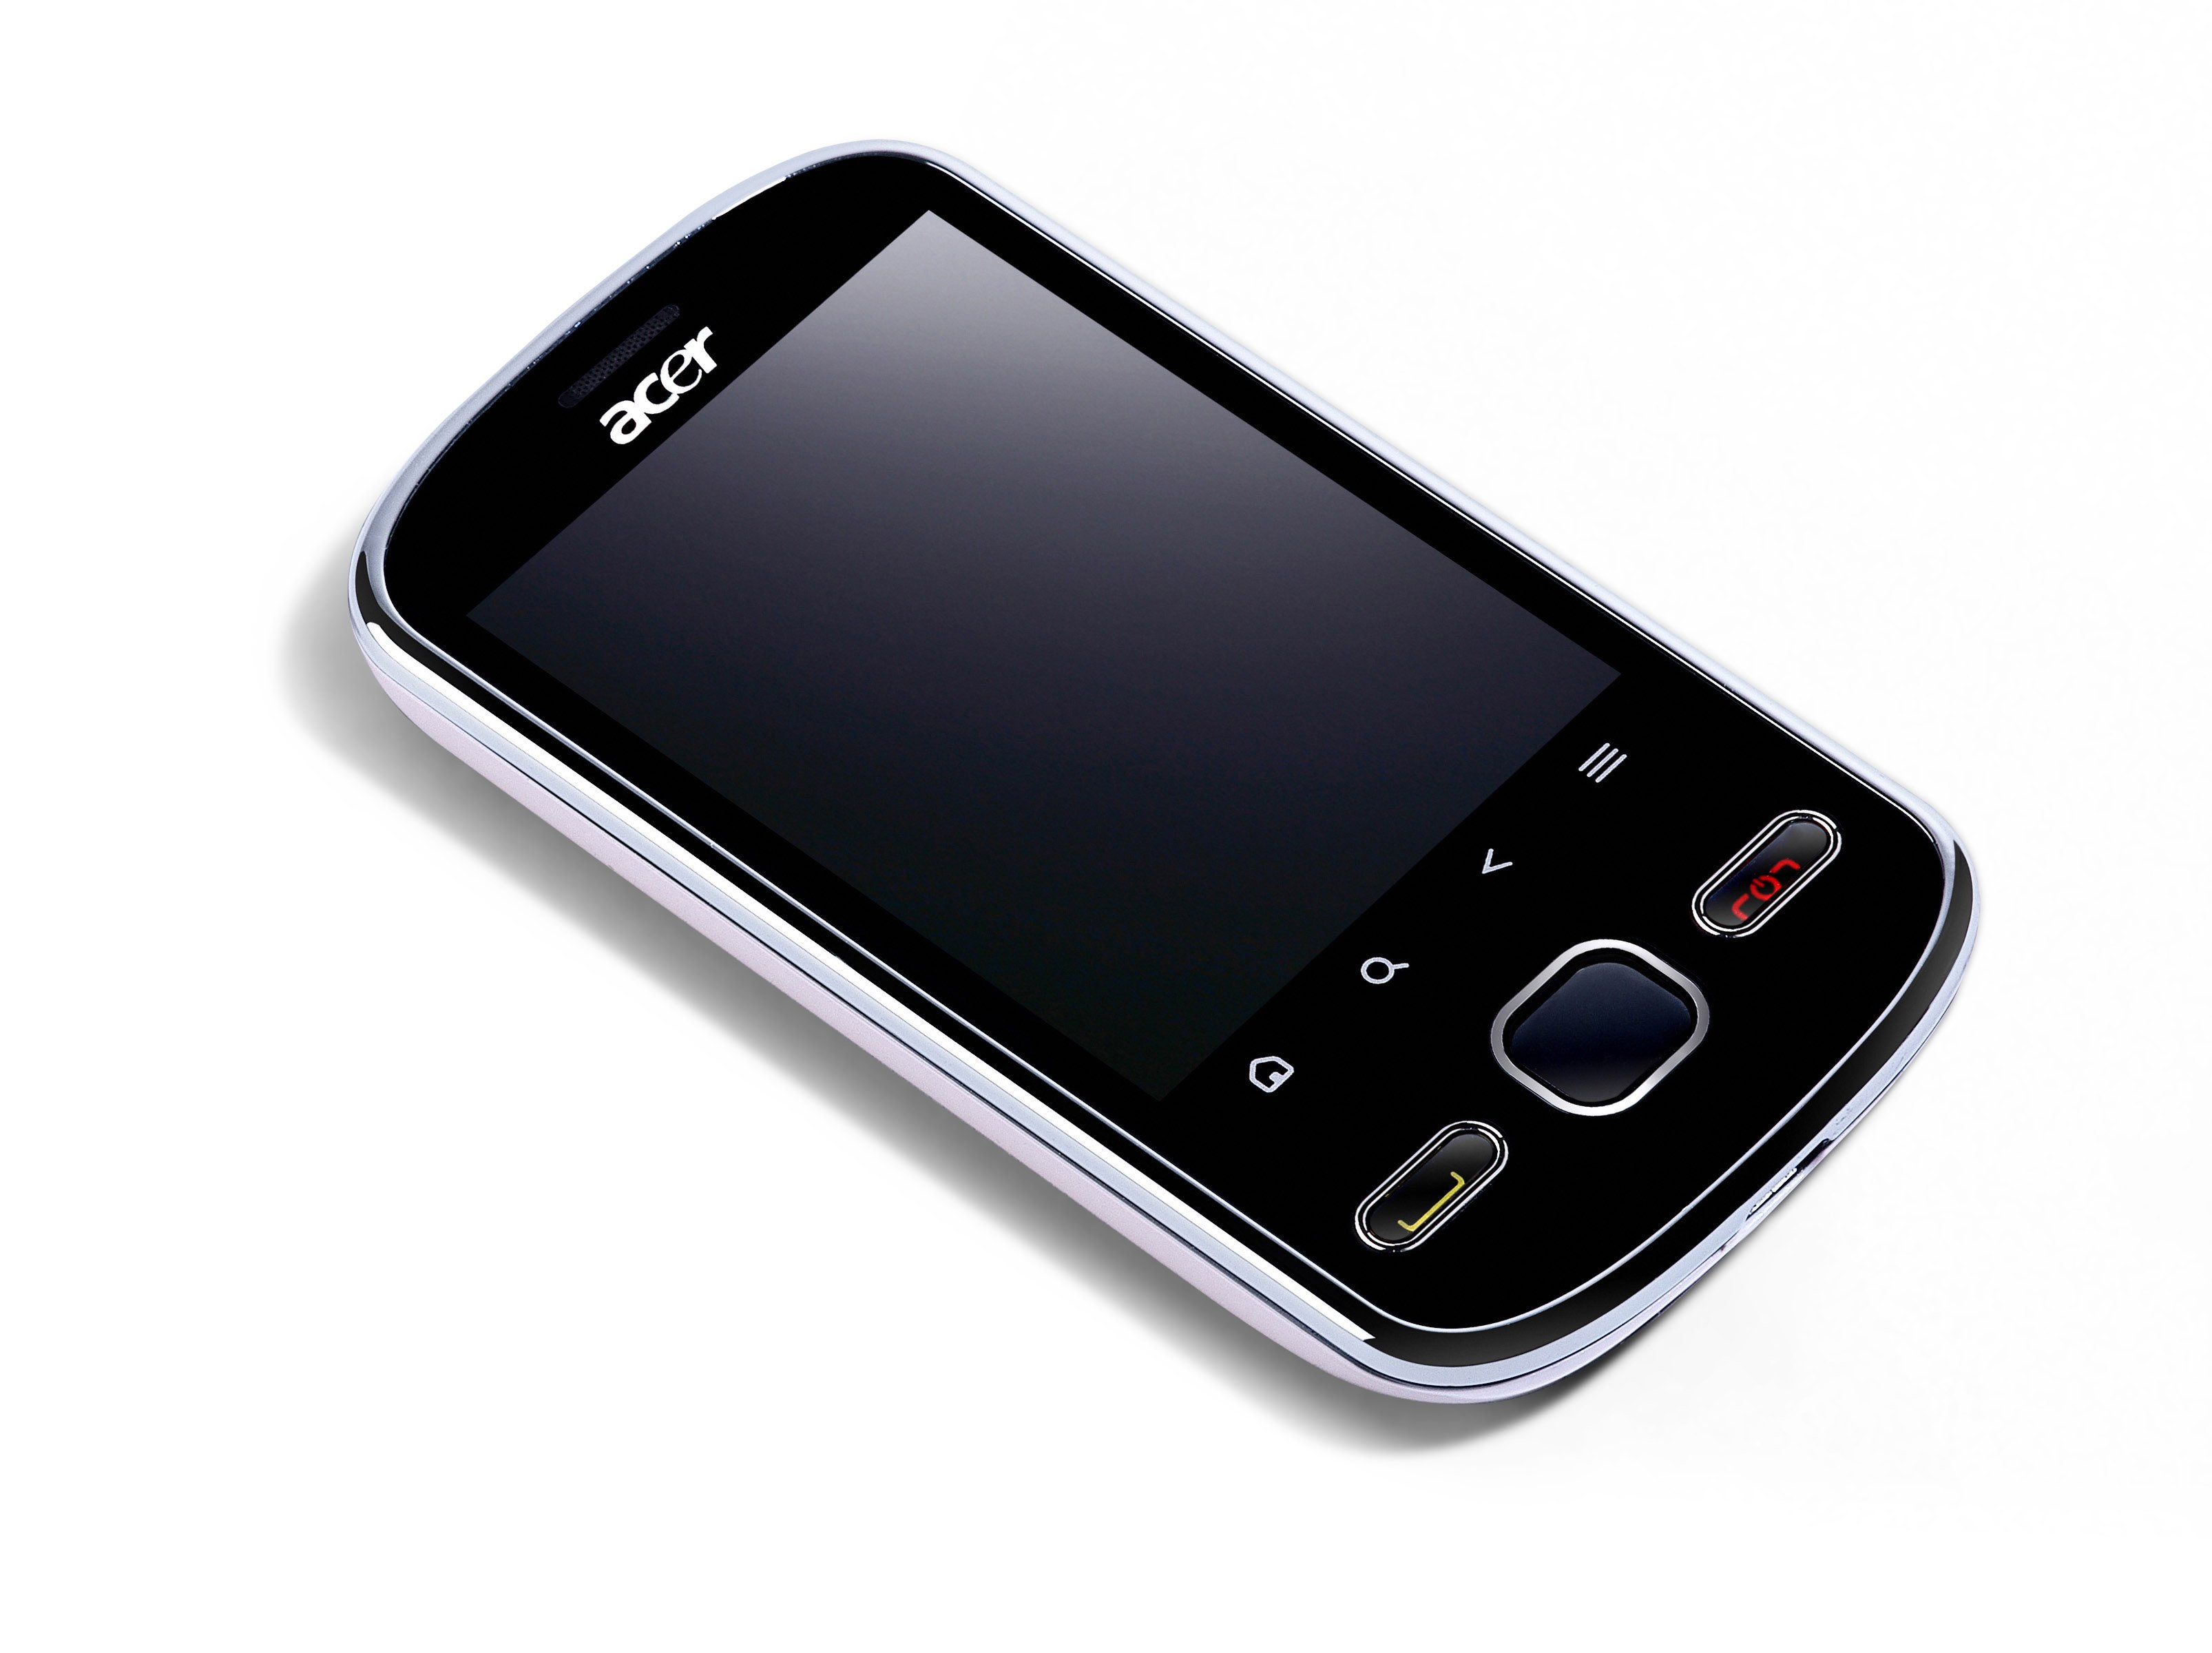 Дешевые телефоны липецк. Acer e110 BETOUCH тачскрин. Fly e110. Смартфоны с сенсорными кнопками. Сенсорный телефон с двумя кнопками.